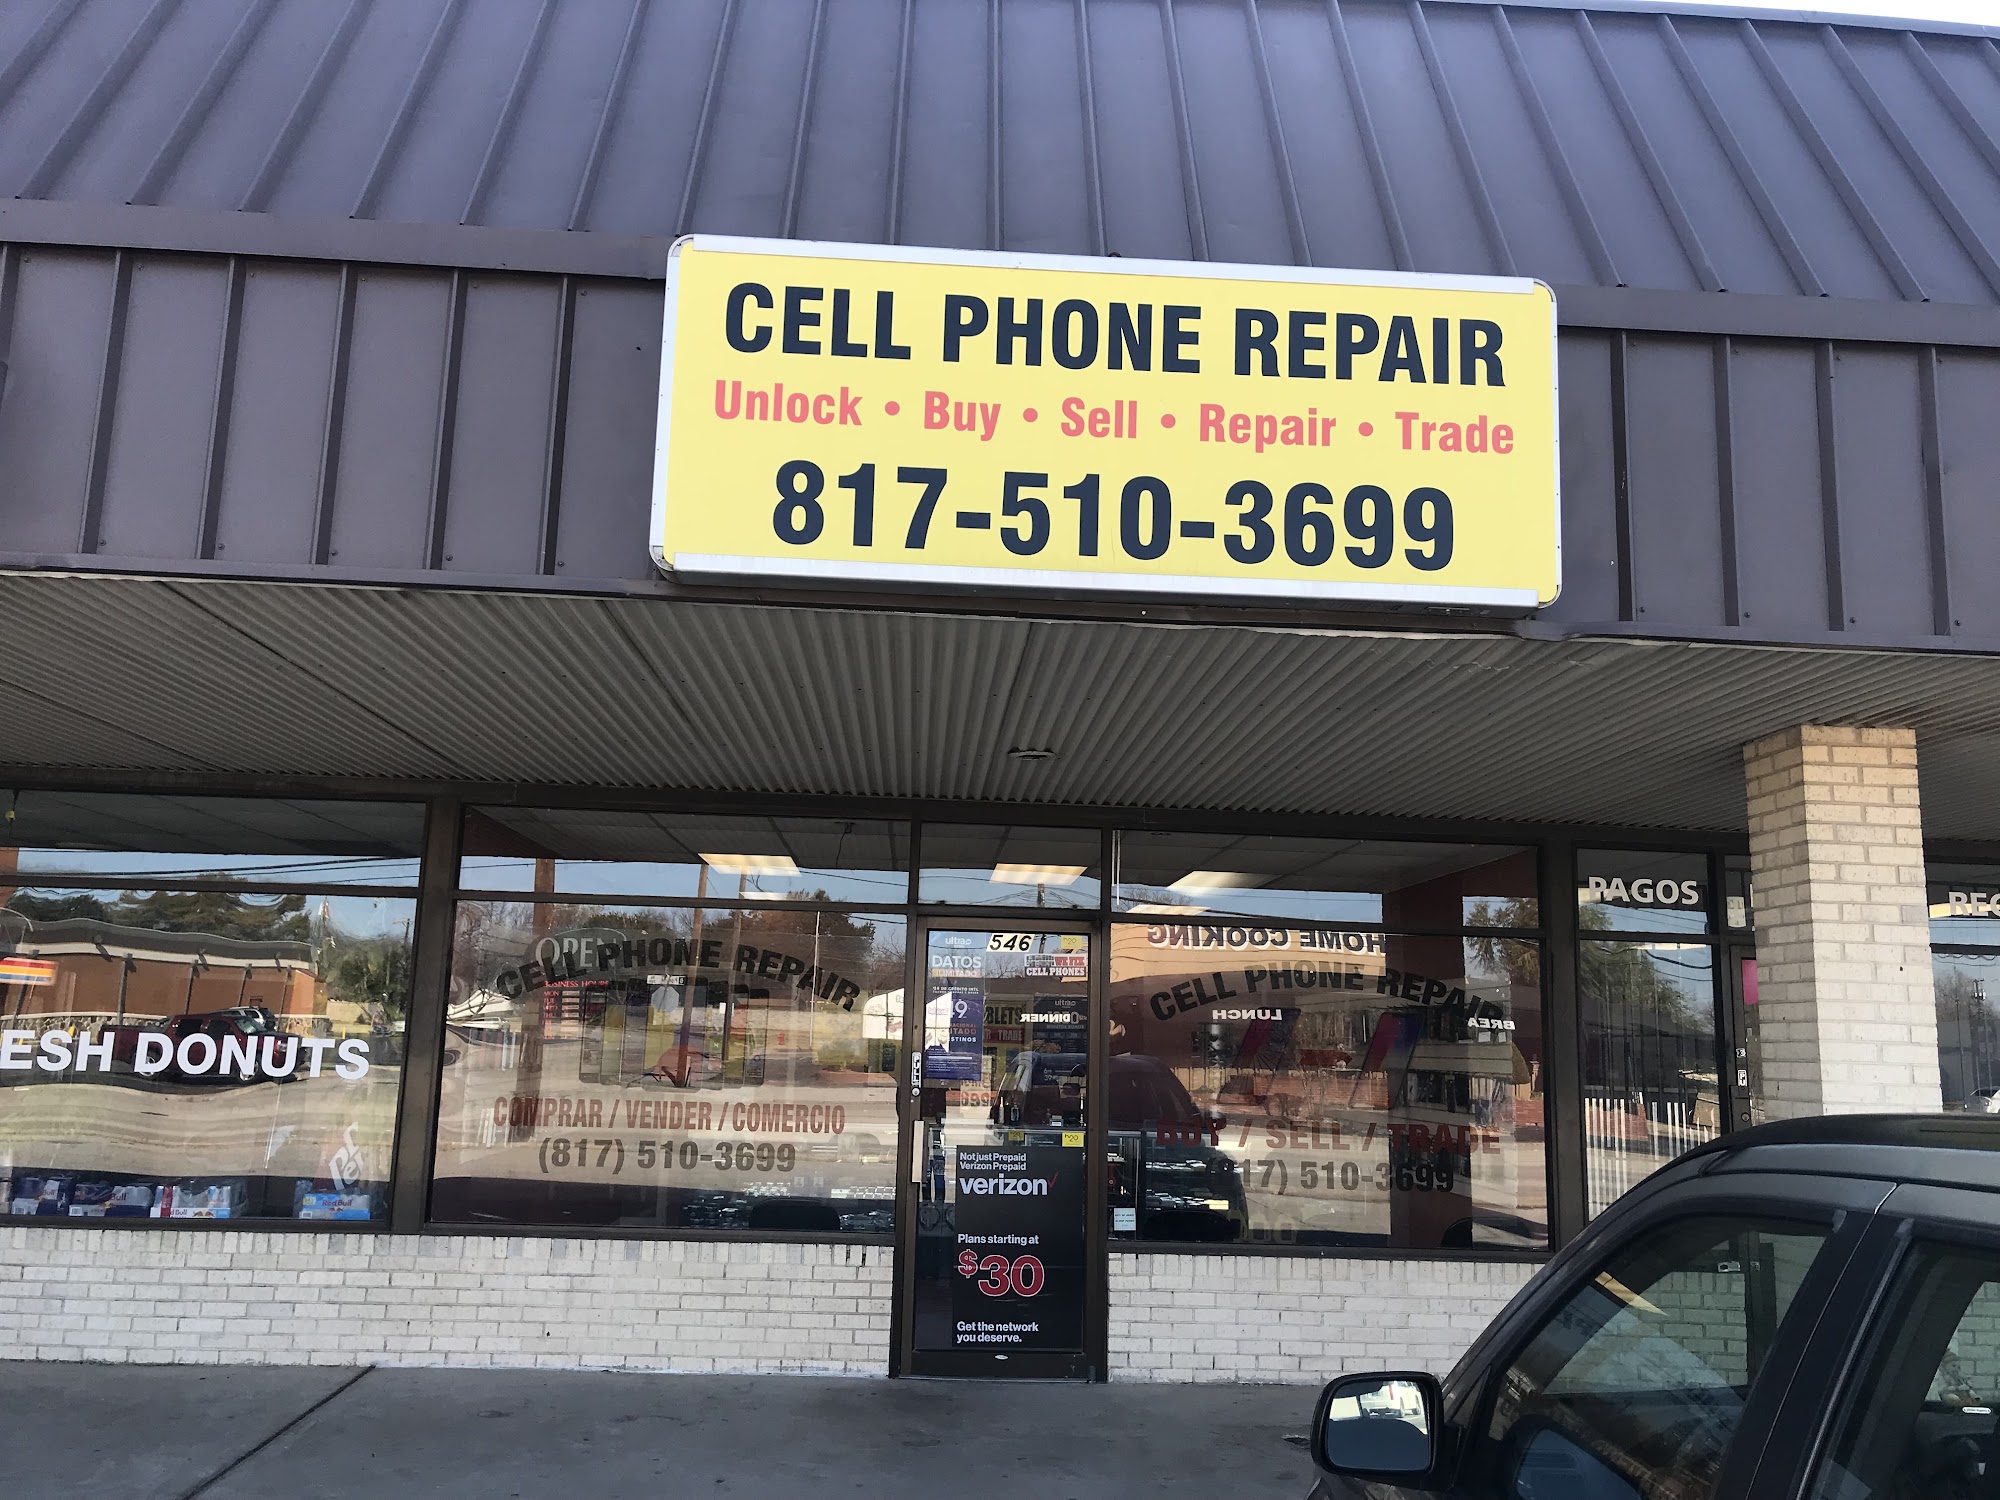 CELL PHONE REPAIR